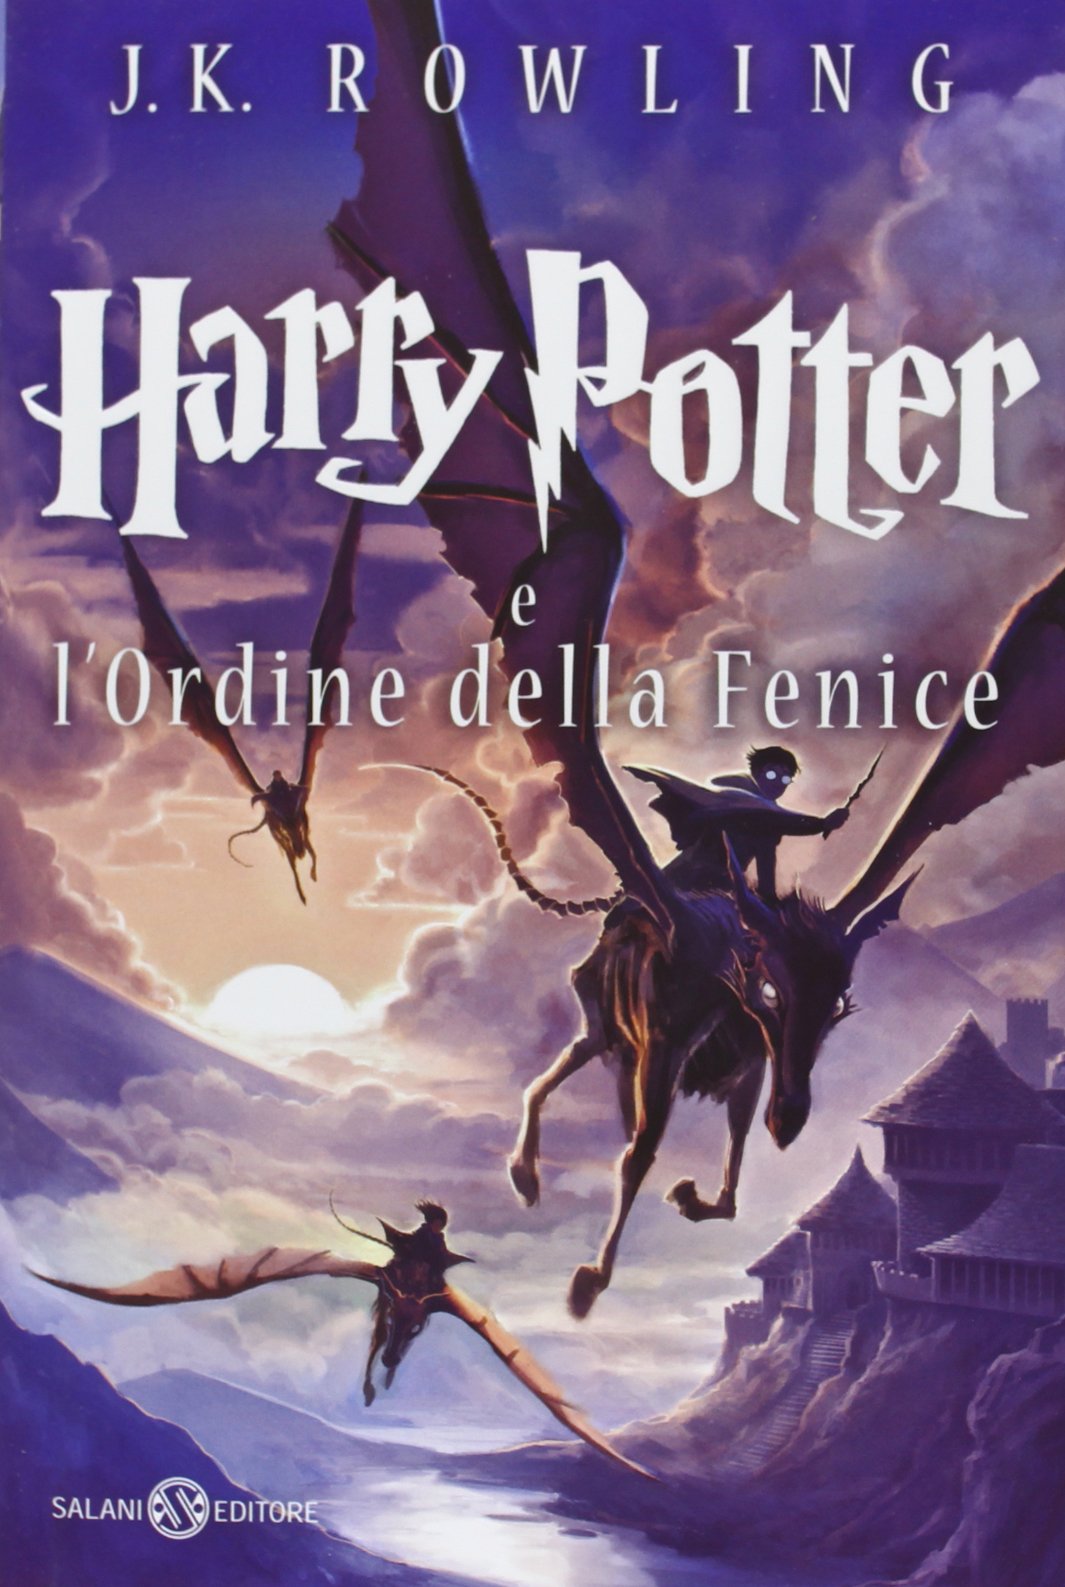 Harry Potter e l'Ordine della Fenice (J. K. Rowling) Acquistalo su Amazon